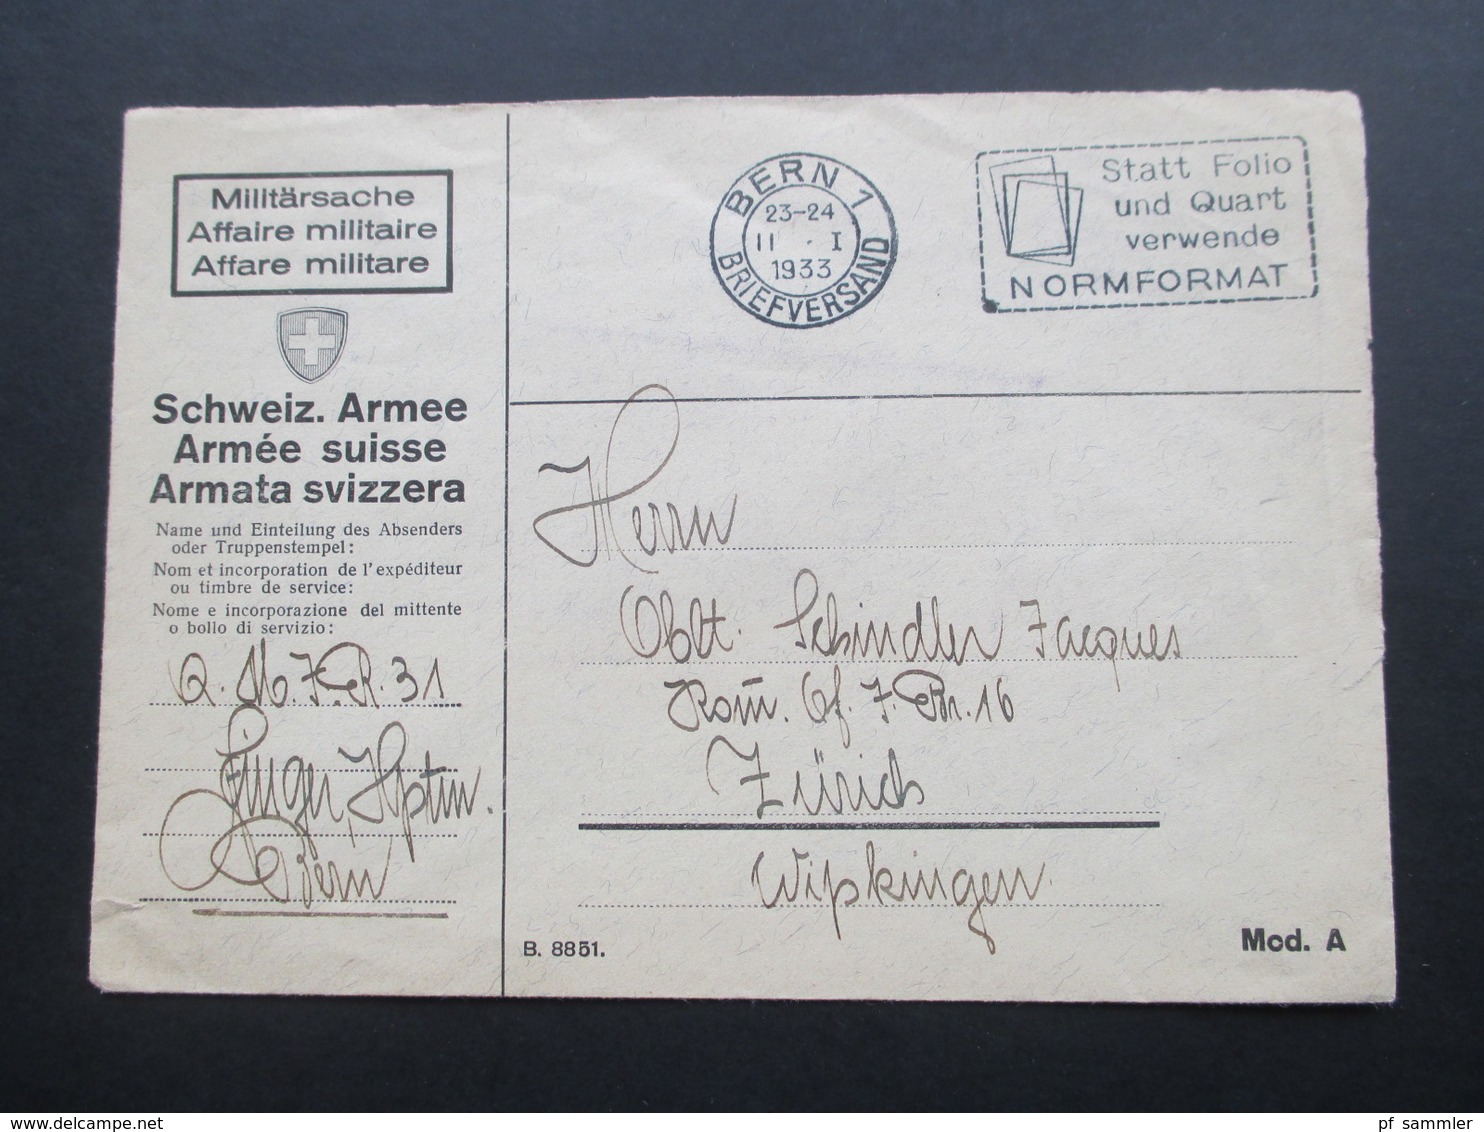 Schweiz Brief 1933 Miltärsache Affaire Militaire. Schweiz. Armee. Bern Statt Folio Und Quart Verwende Normformat - Briefe U. Dokumente